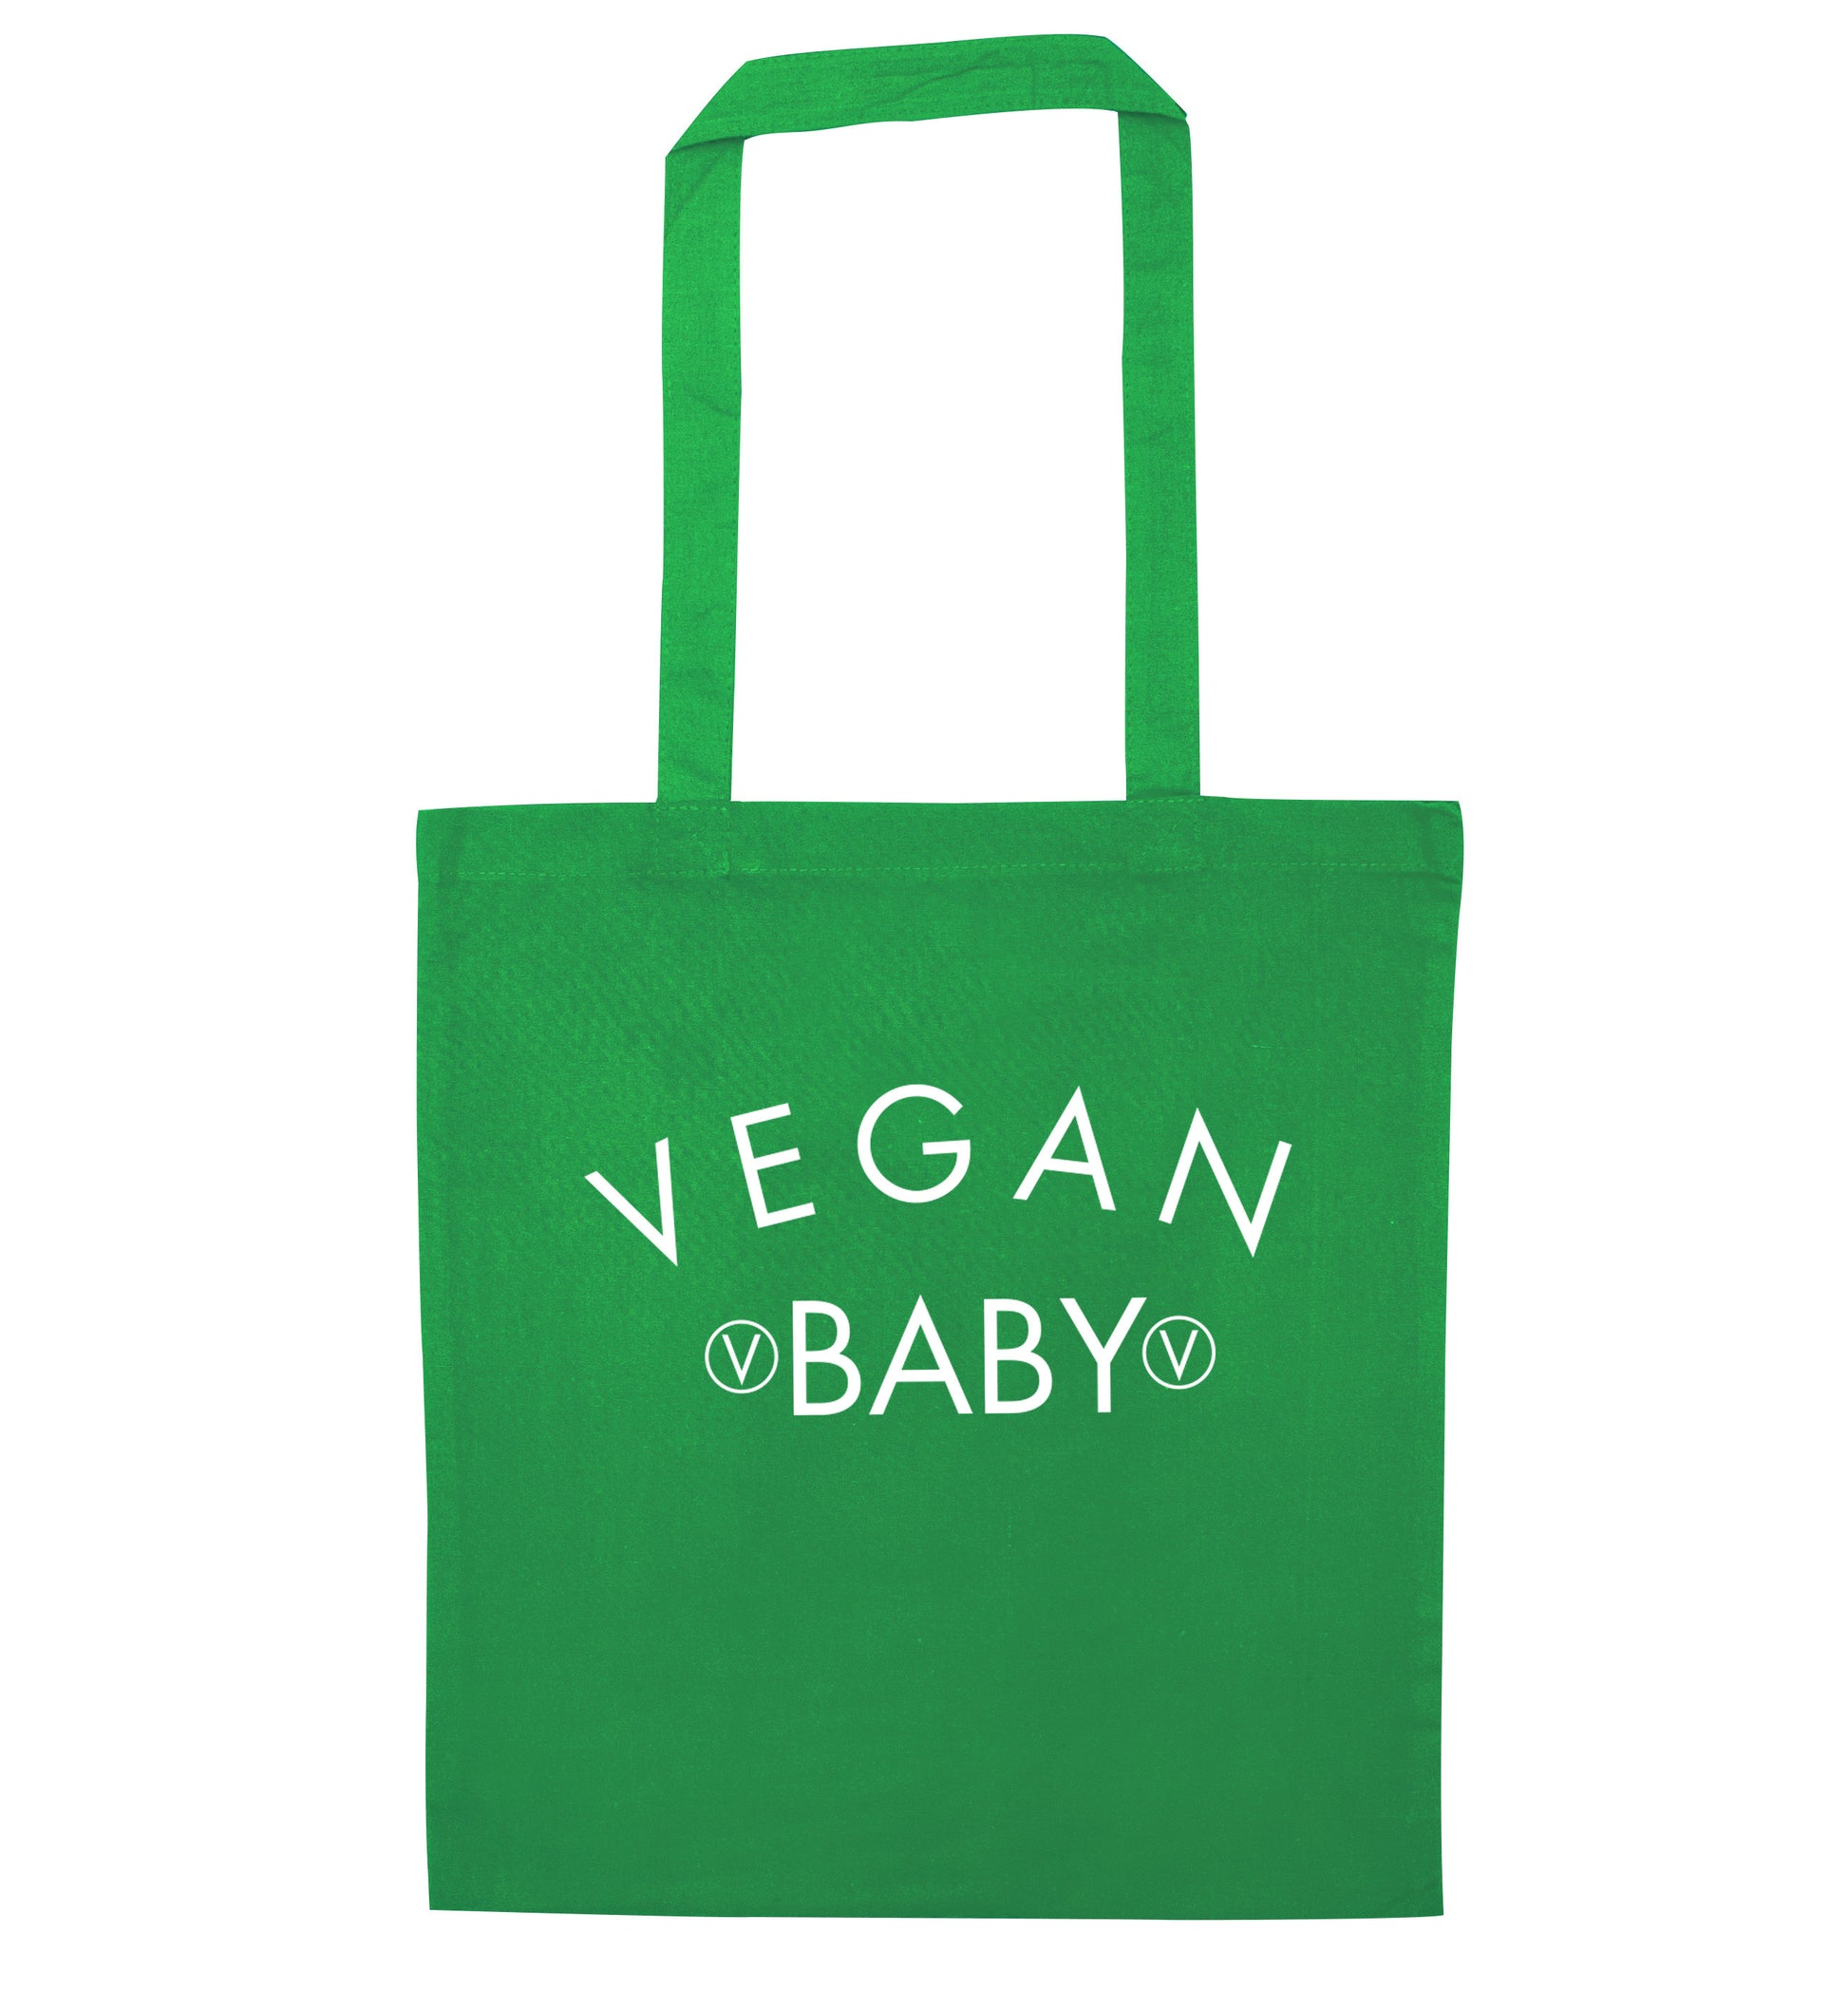 Vegan baby green tote bag